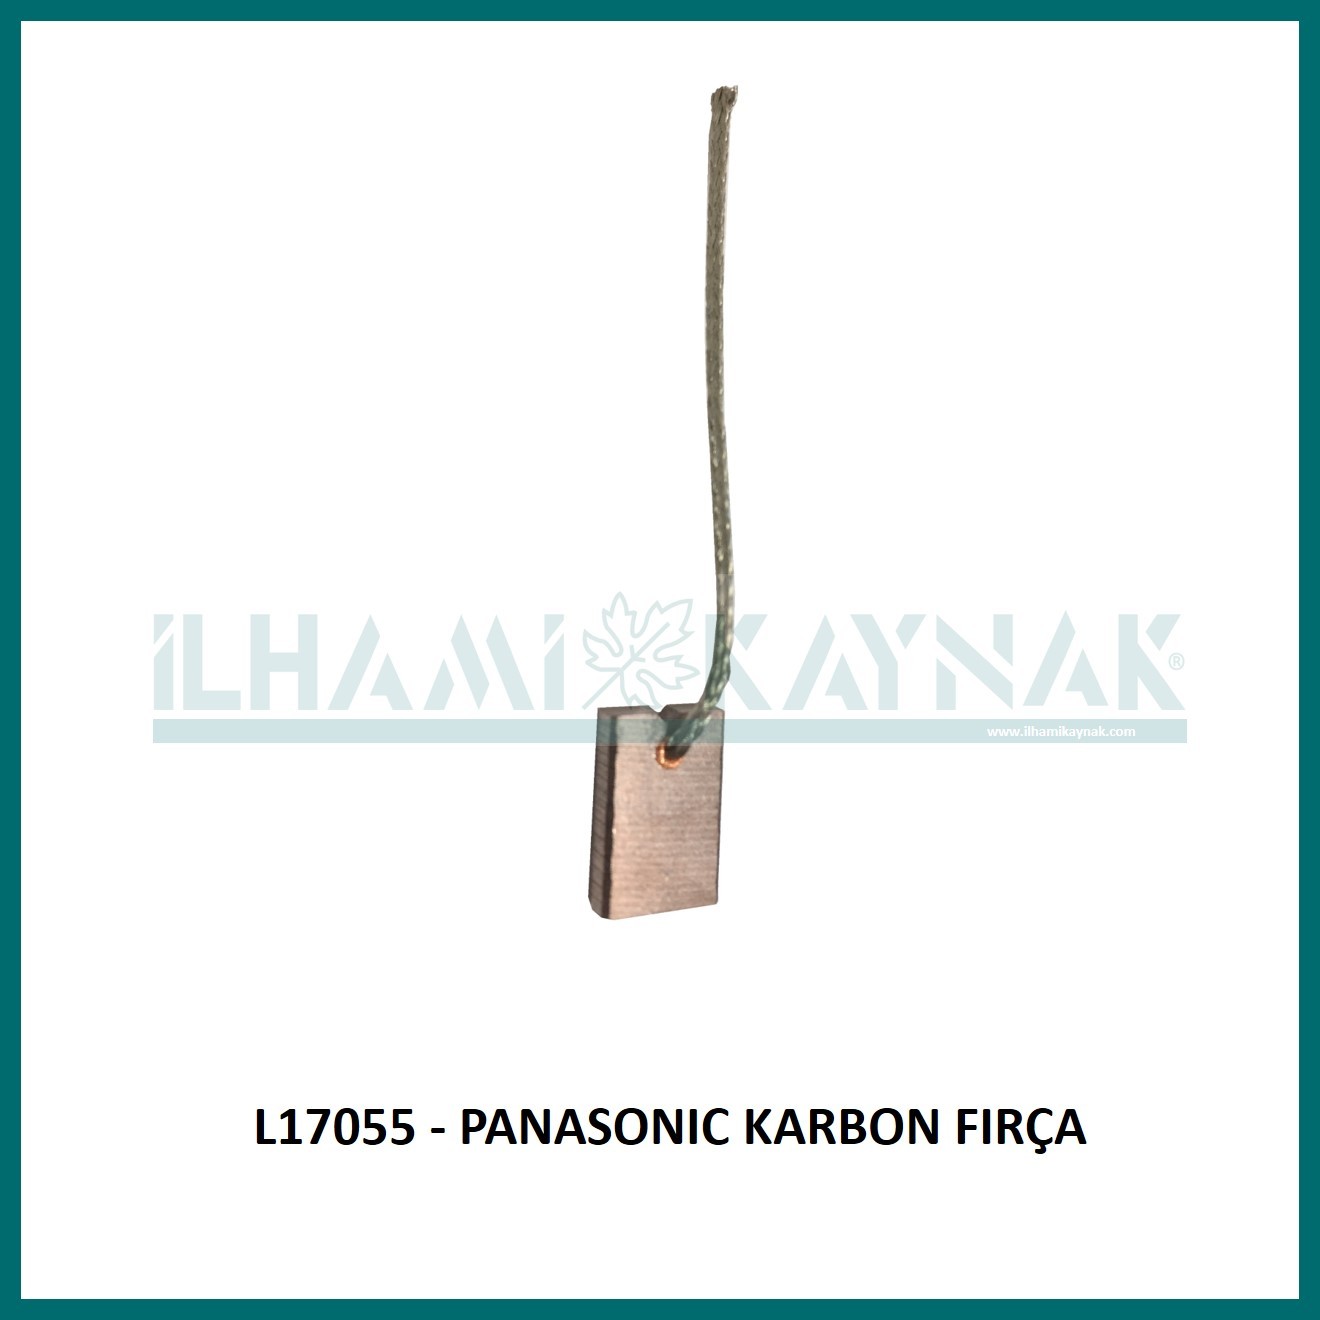 L17055 - PANASONIC KARBON FIRÇA - 3*9.5*13 mm - Minimum Satın Alım: 10 Adet